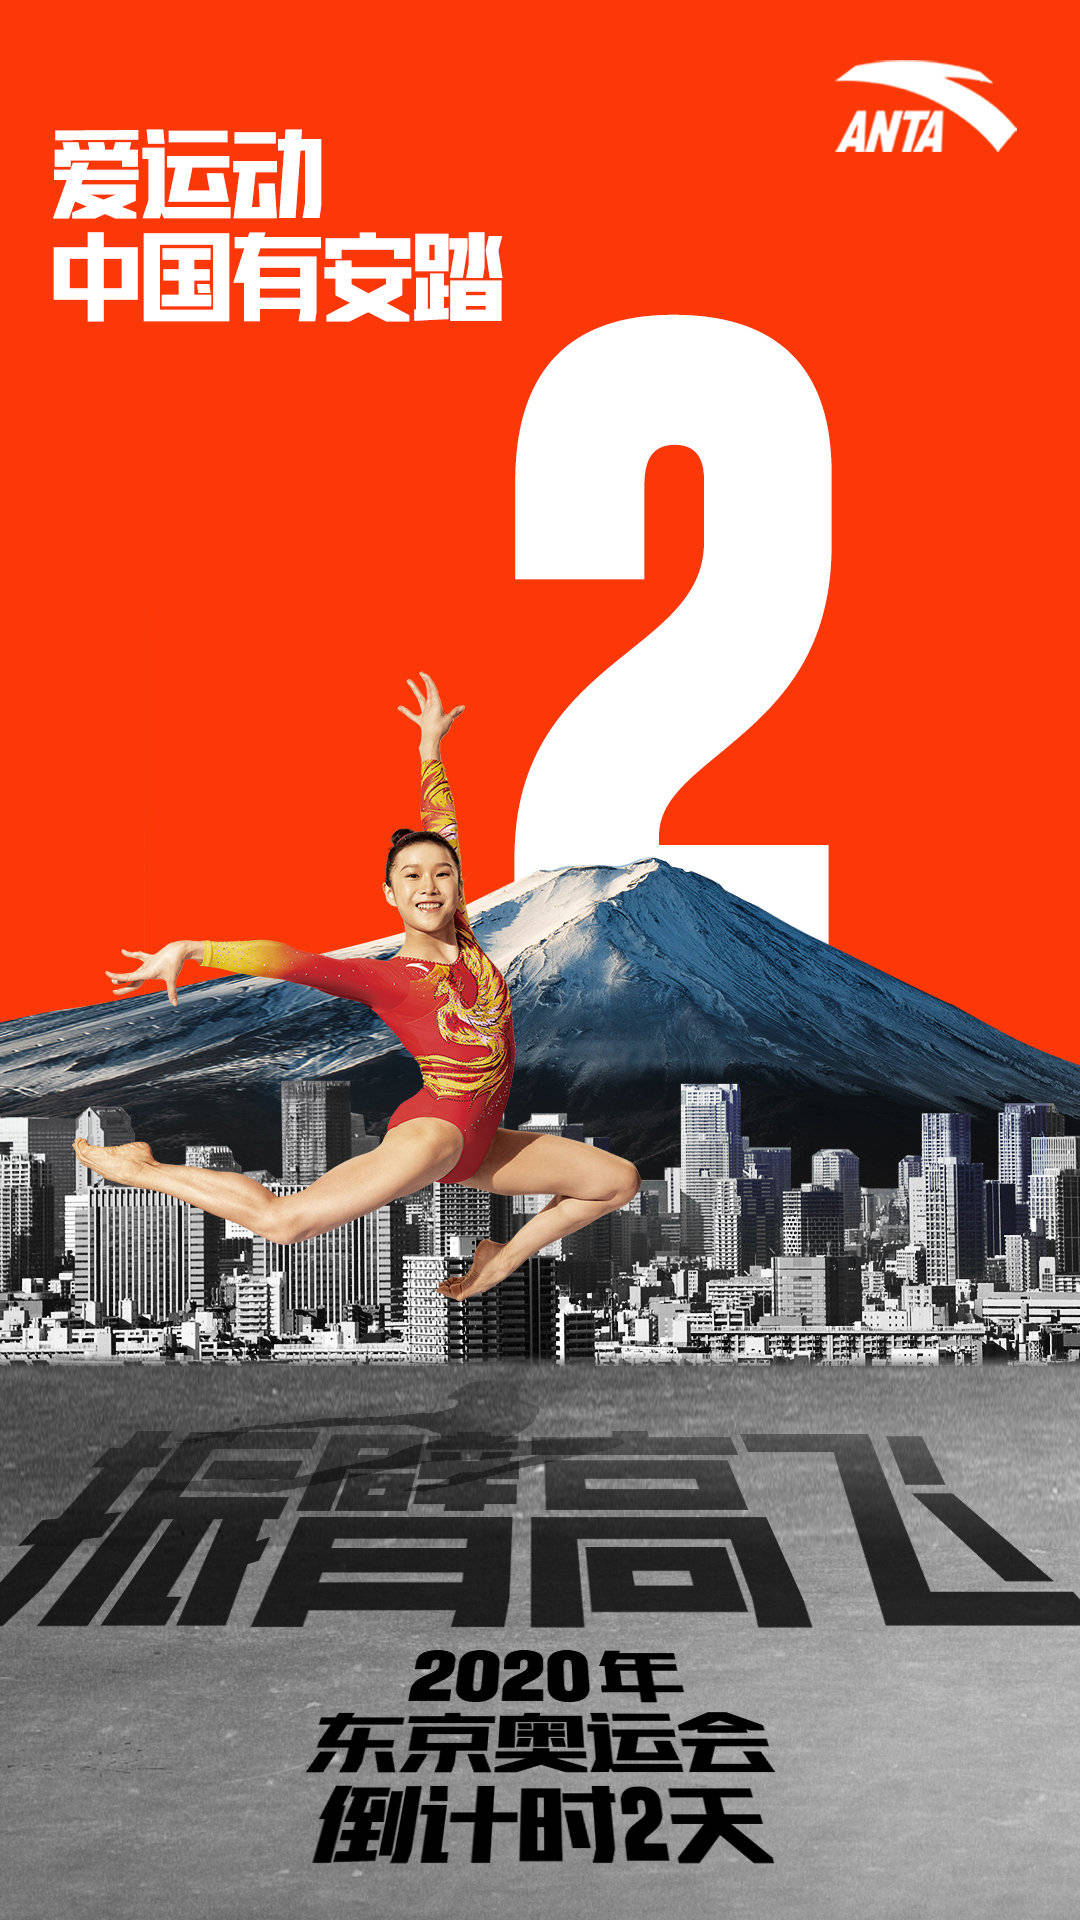 东京奥运系列海报:爱运动,中国有安踏